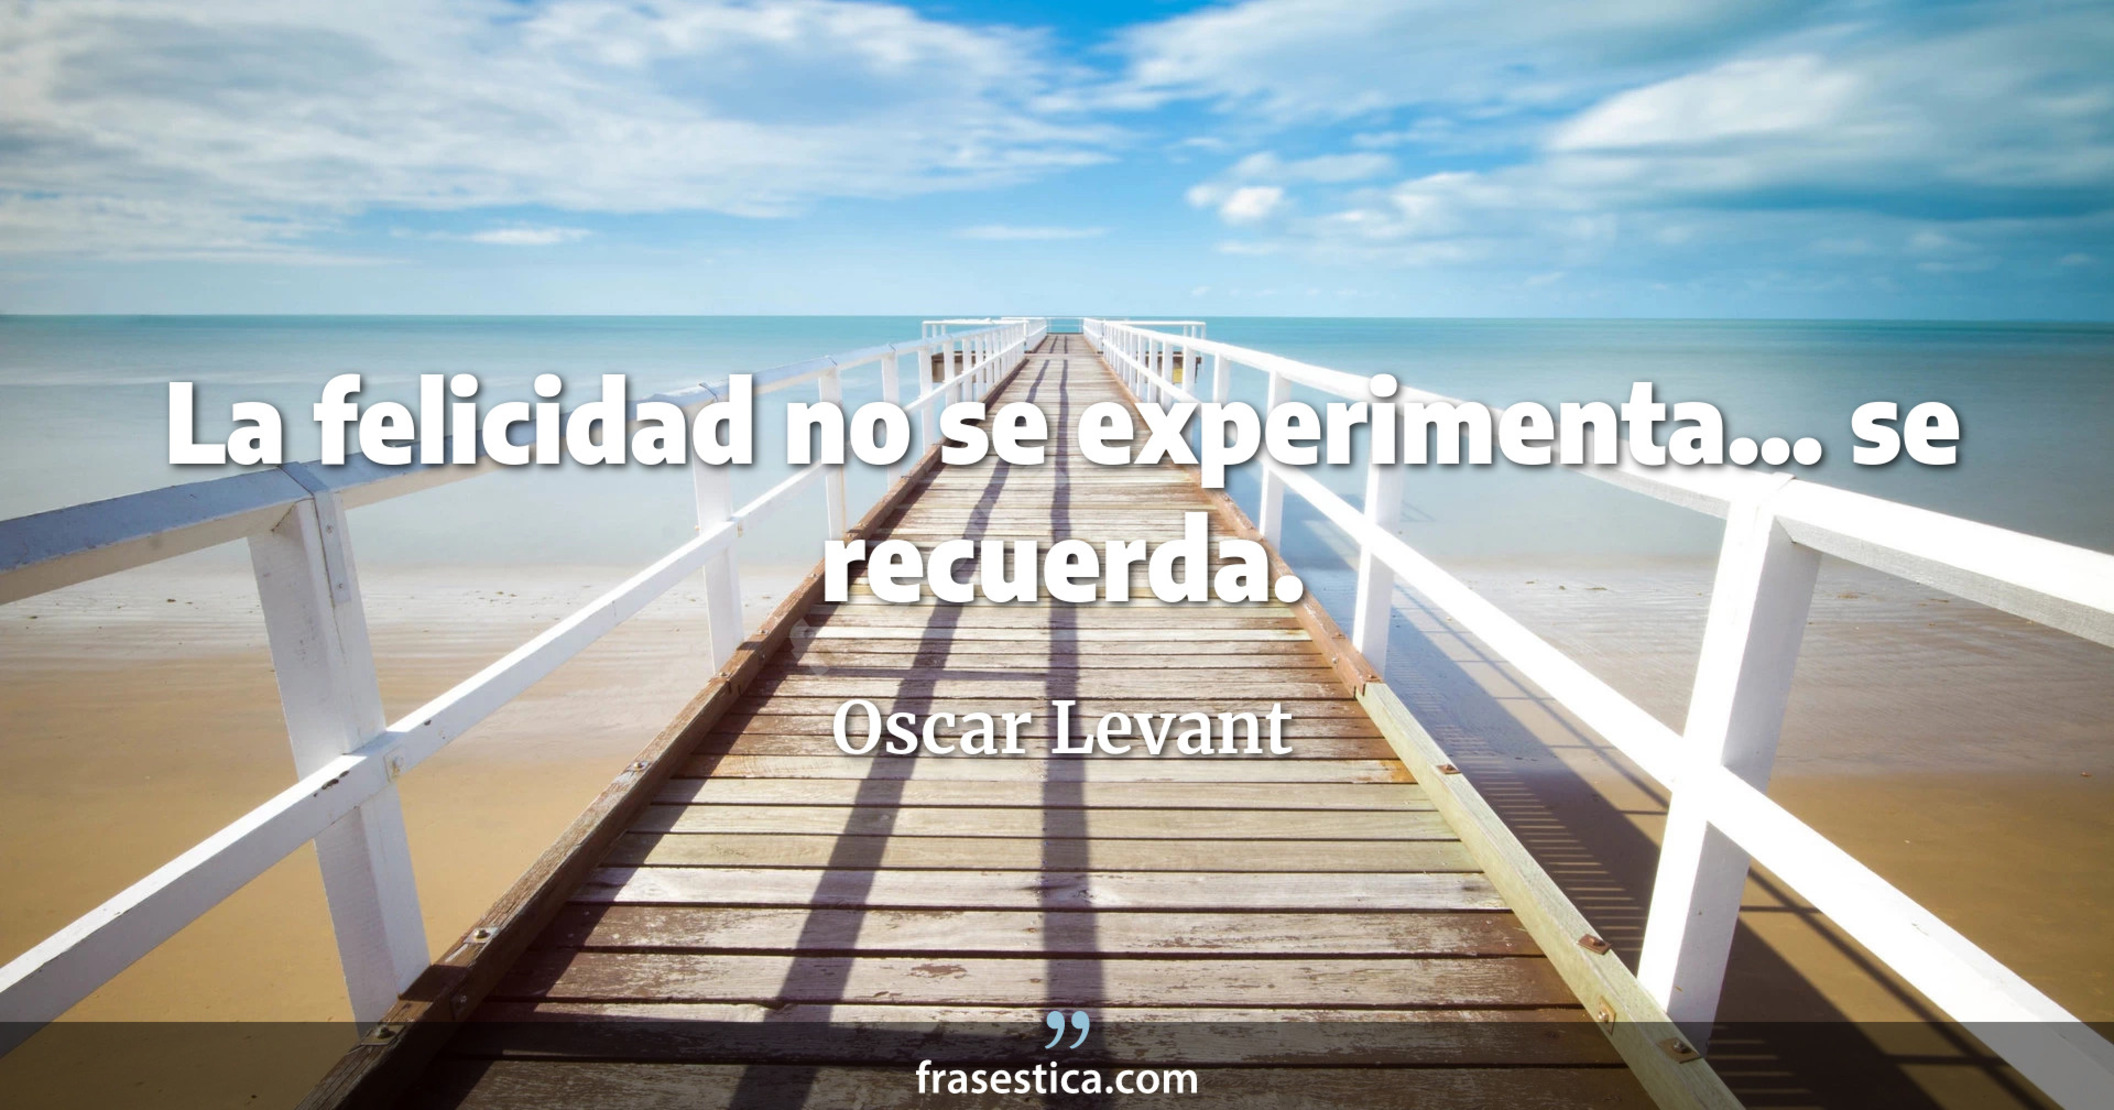 La felicidad no se experimenta... se recuerda. - Oscar Levant